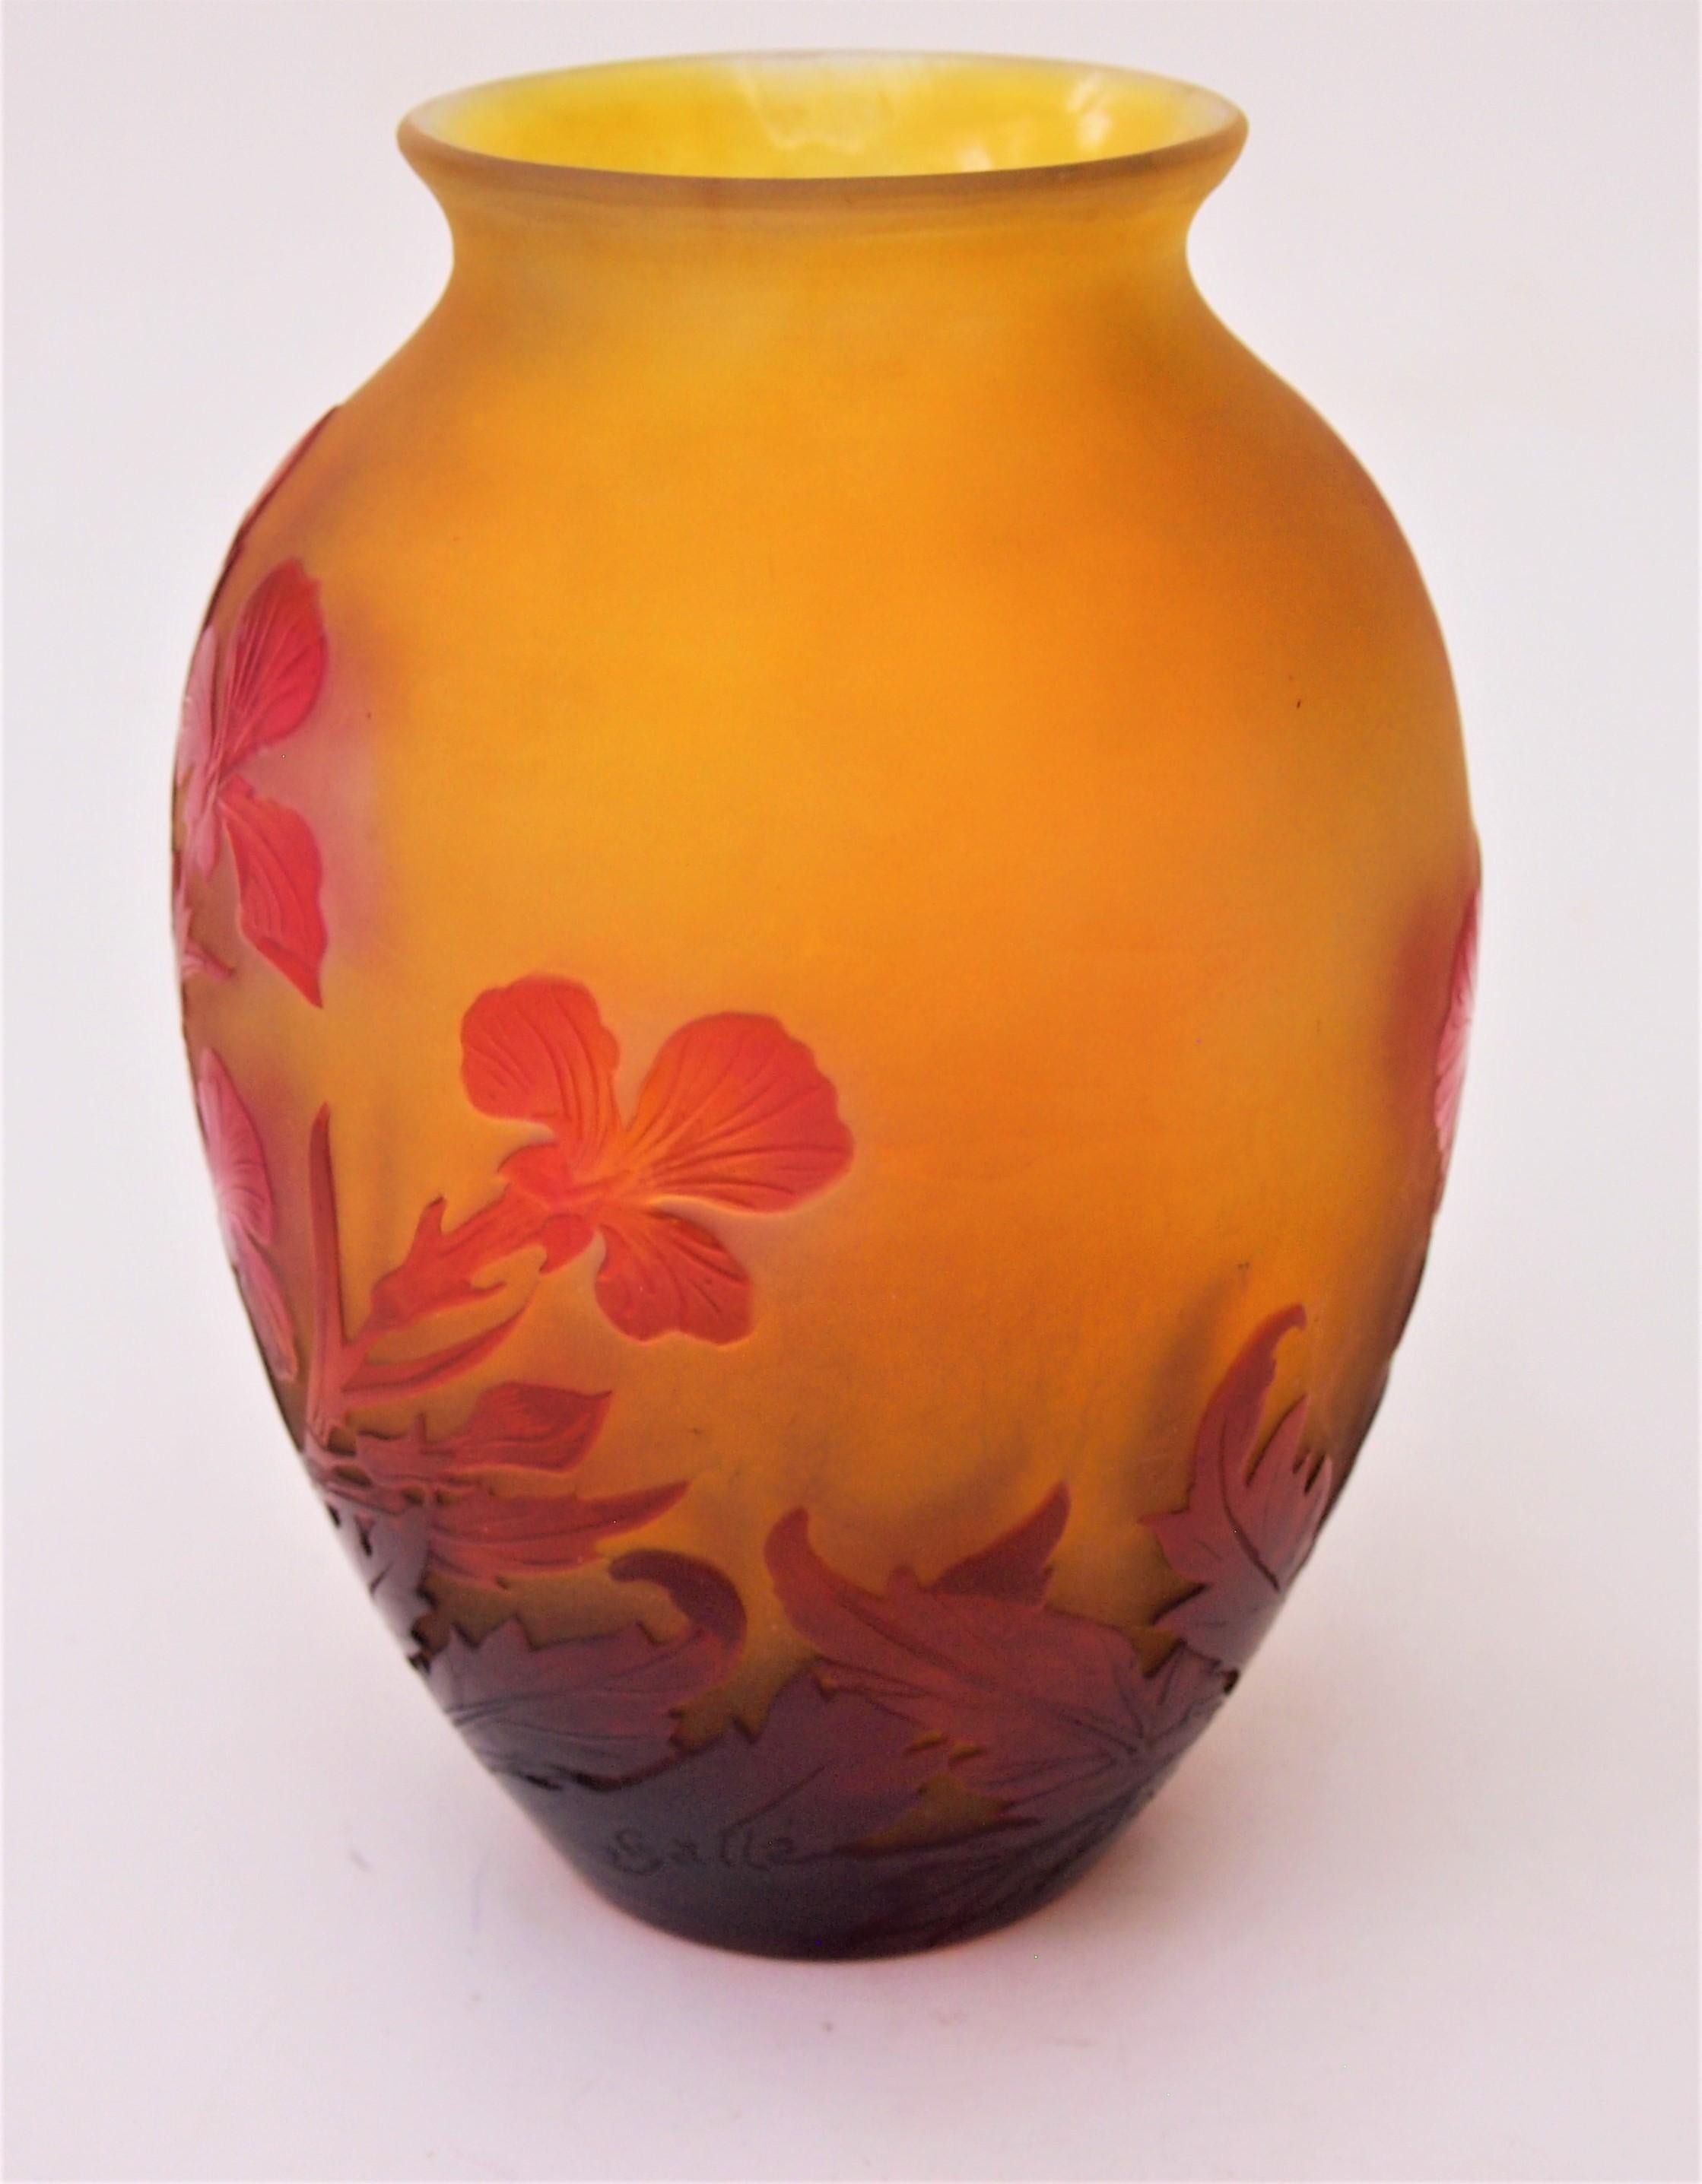 Französischer Jugendstil Emile Gallé  kugelförmige Vase mit Kamee, die Schwertlilien in Rot- und Orangetönen darstellt, mit leicht ausgestellter Öffnung. Sie hat eine feine Innenpolitur, um das Rot der Schwertlilien hervorzuheben (dies wird manchmal